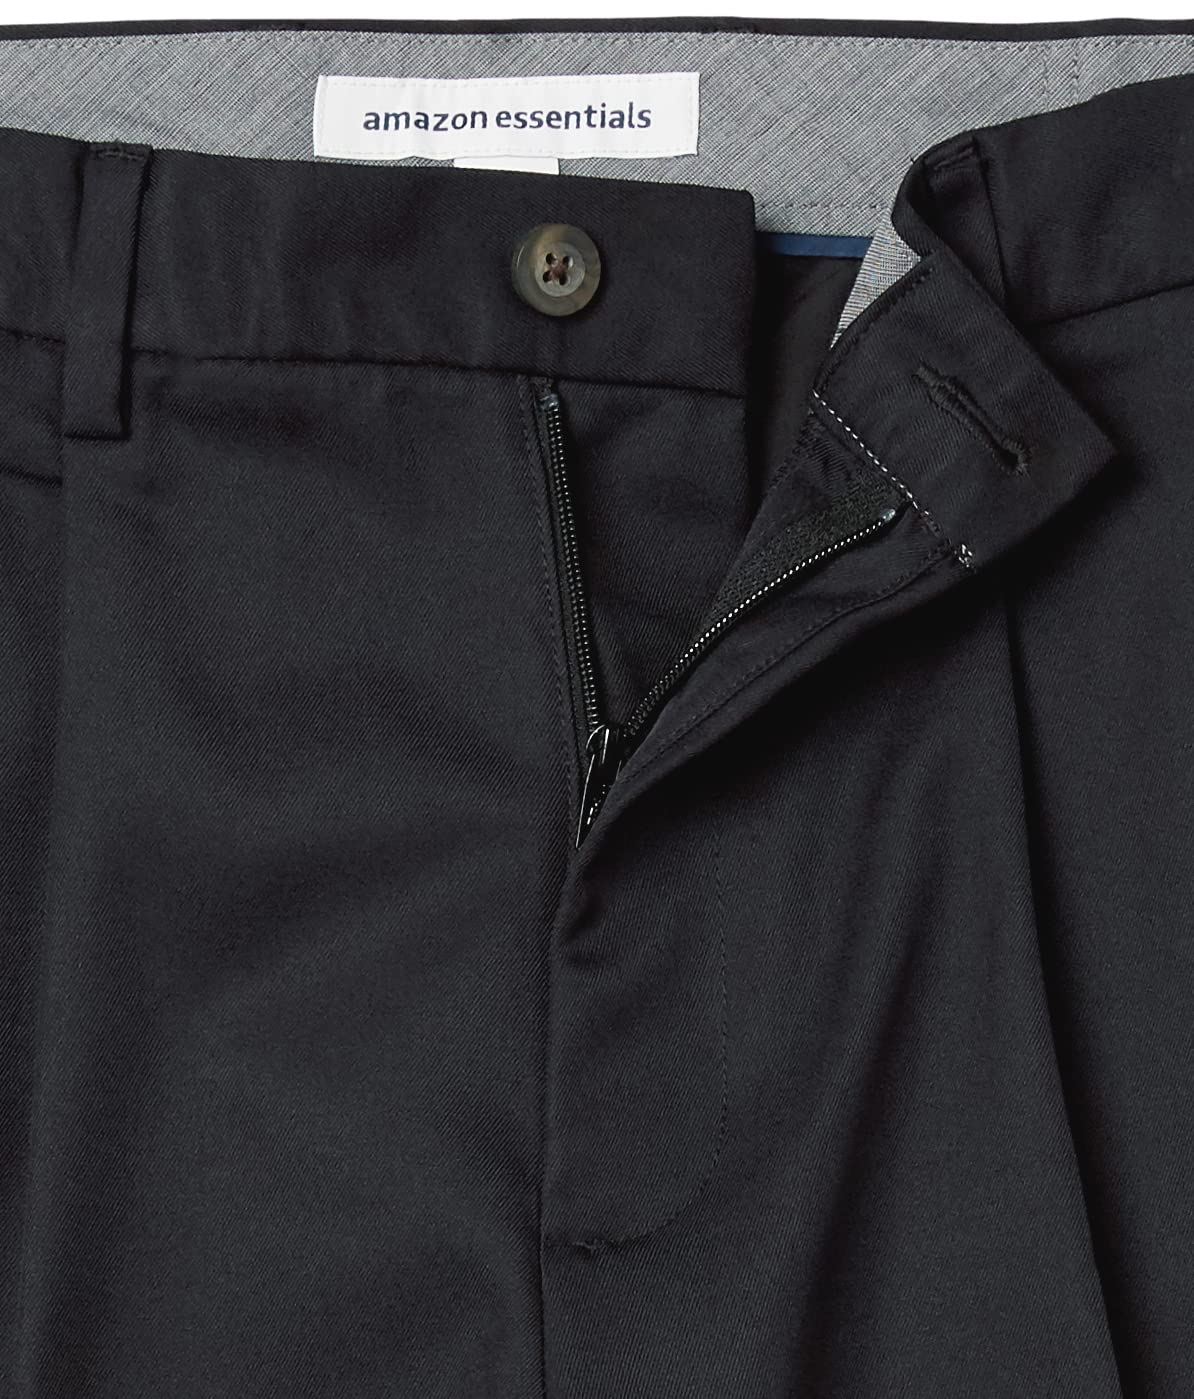 Amazon Essentials Men's Classic-Fit Expandable-Waist Pleated Dress Pant